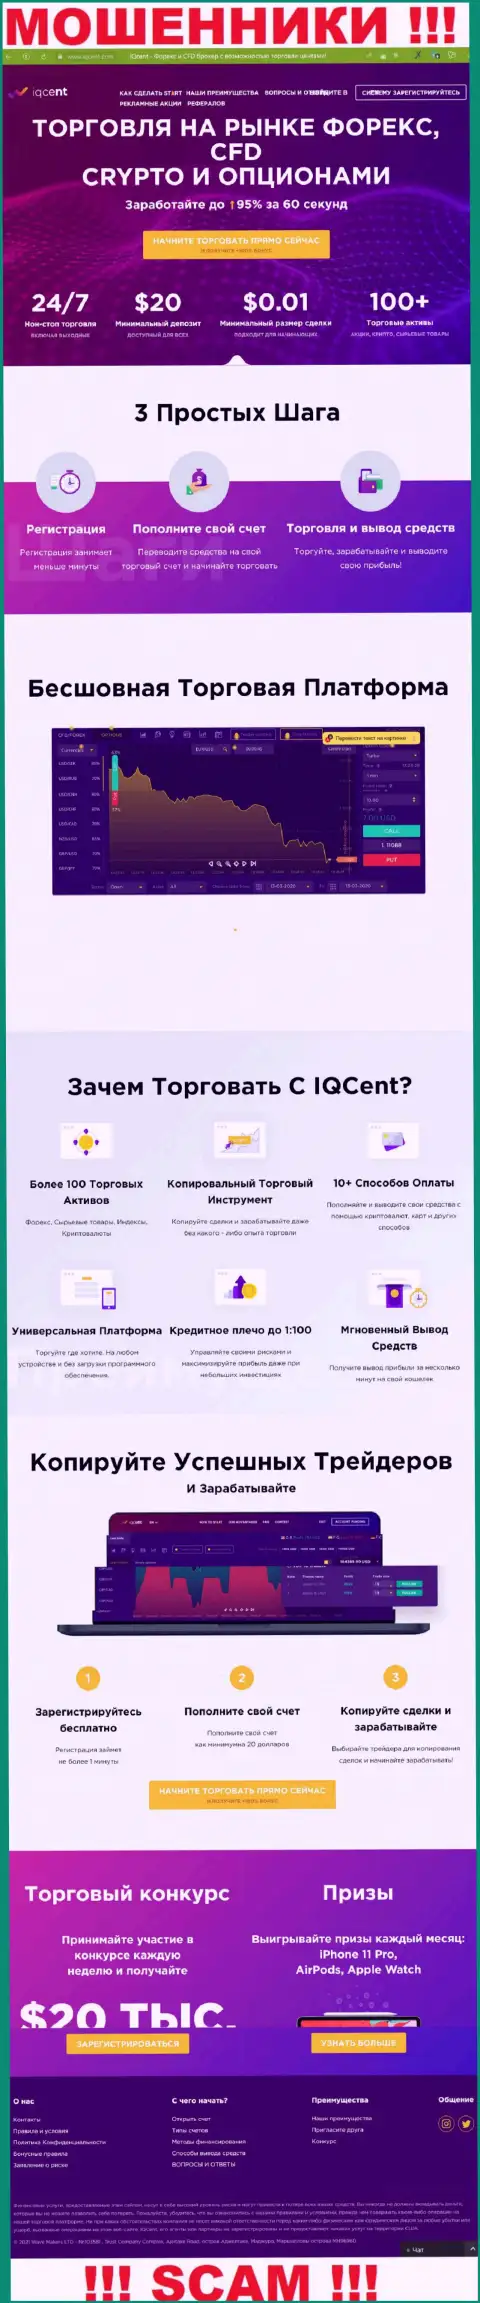 Официальный web-сайт аферистов IQCent, забитый информацией для доверчивых людей